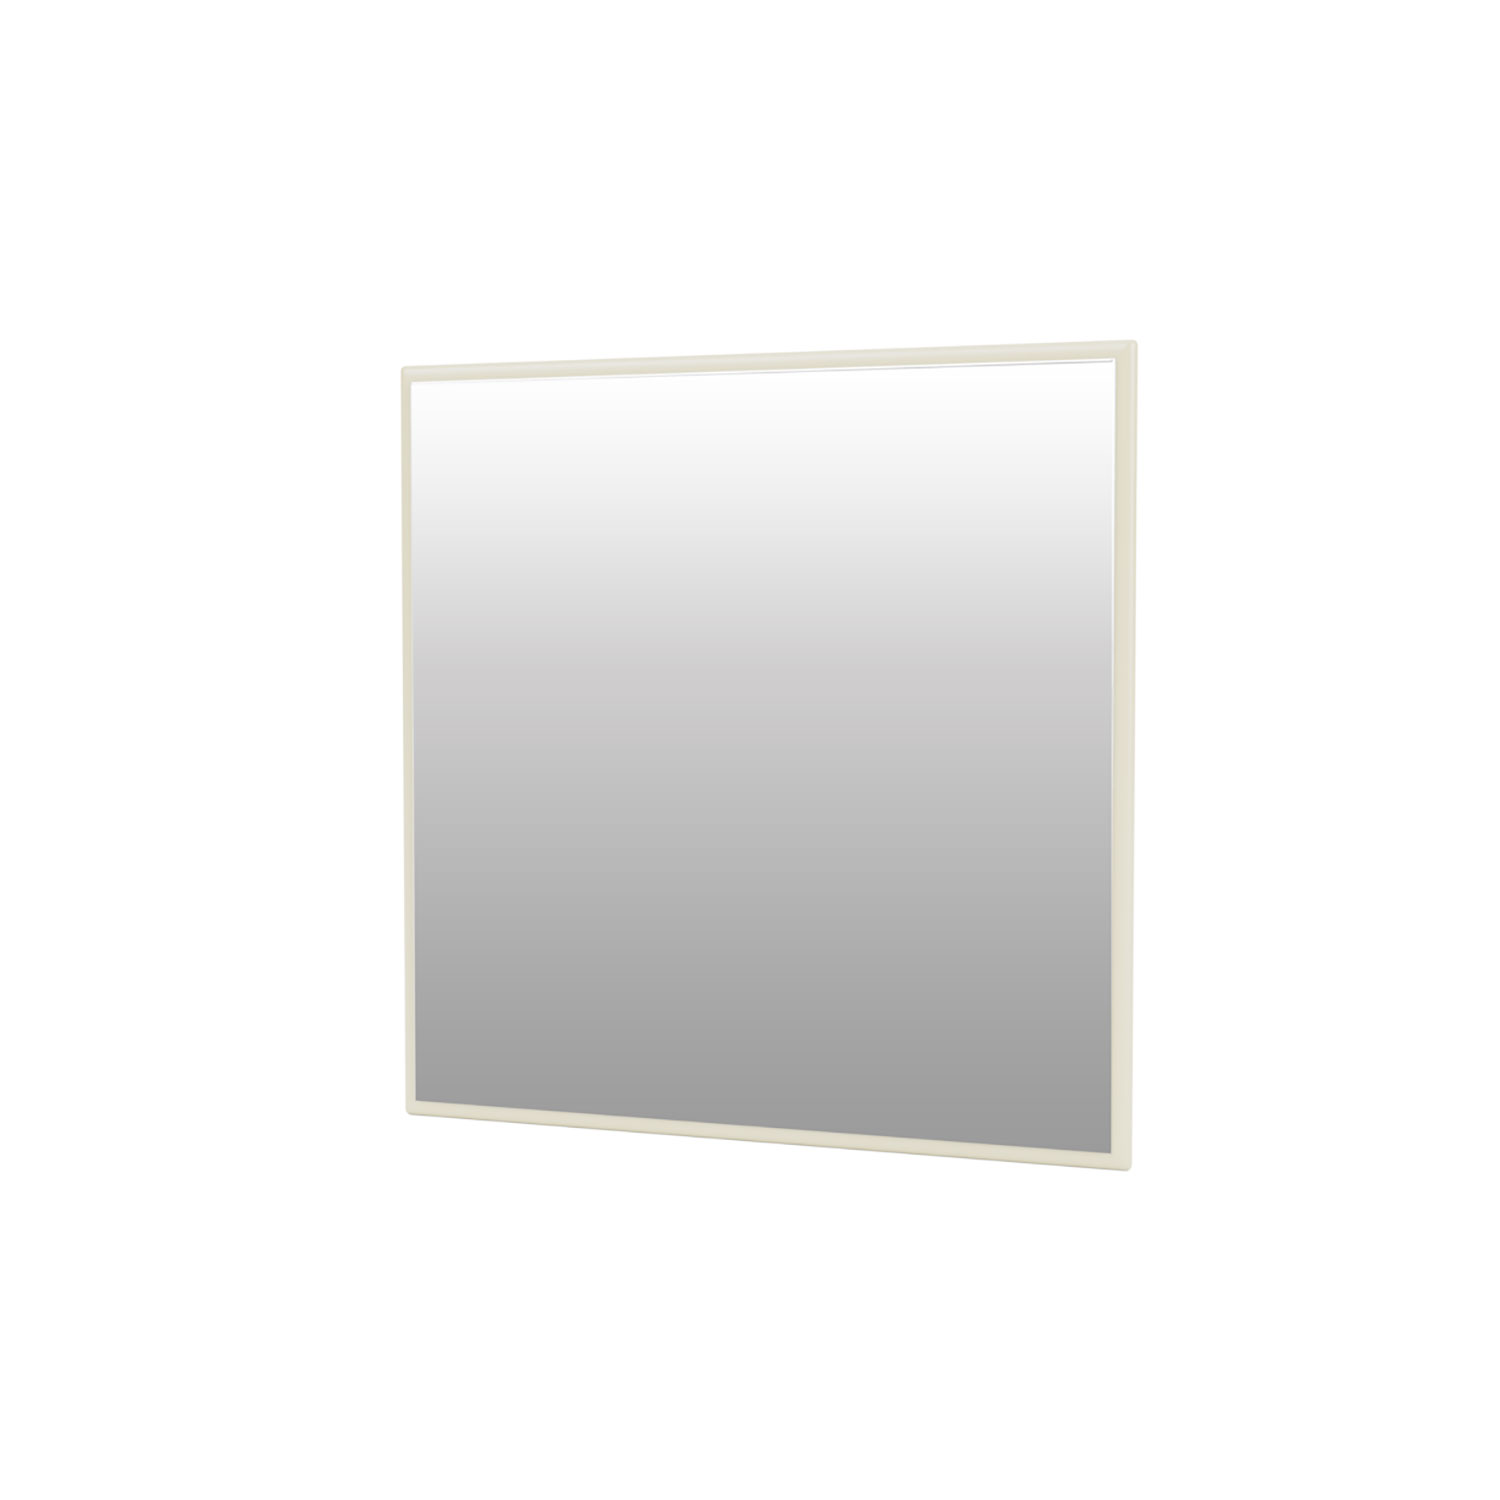 Mini MSQ square mirror, Vanilla